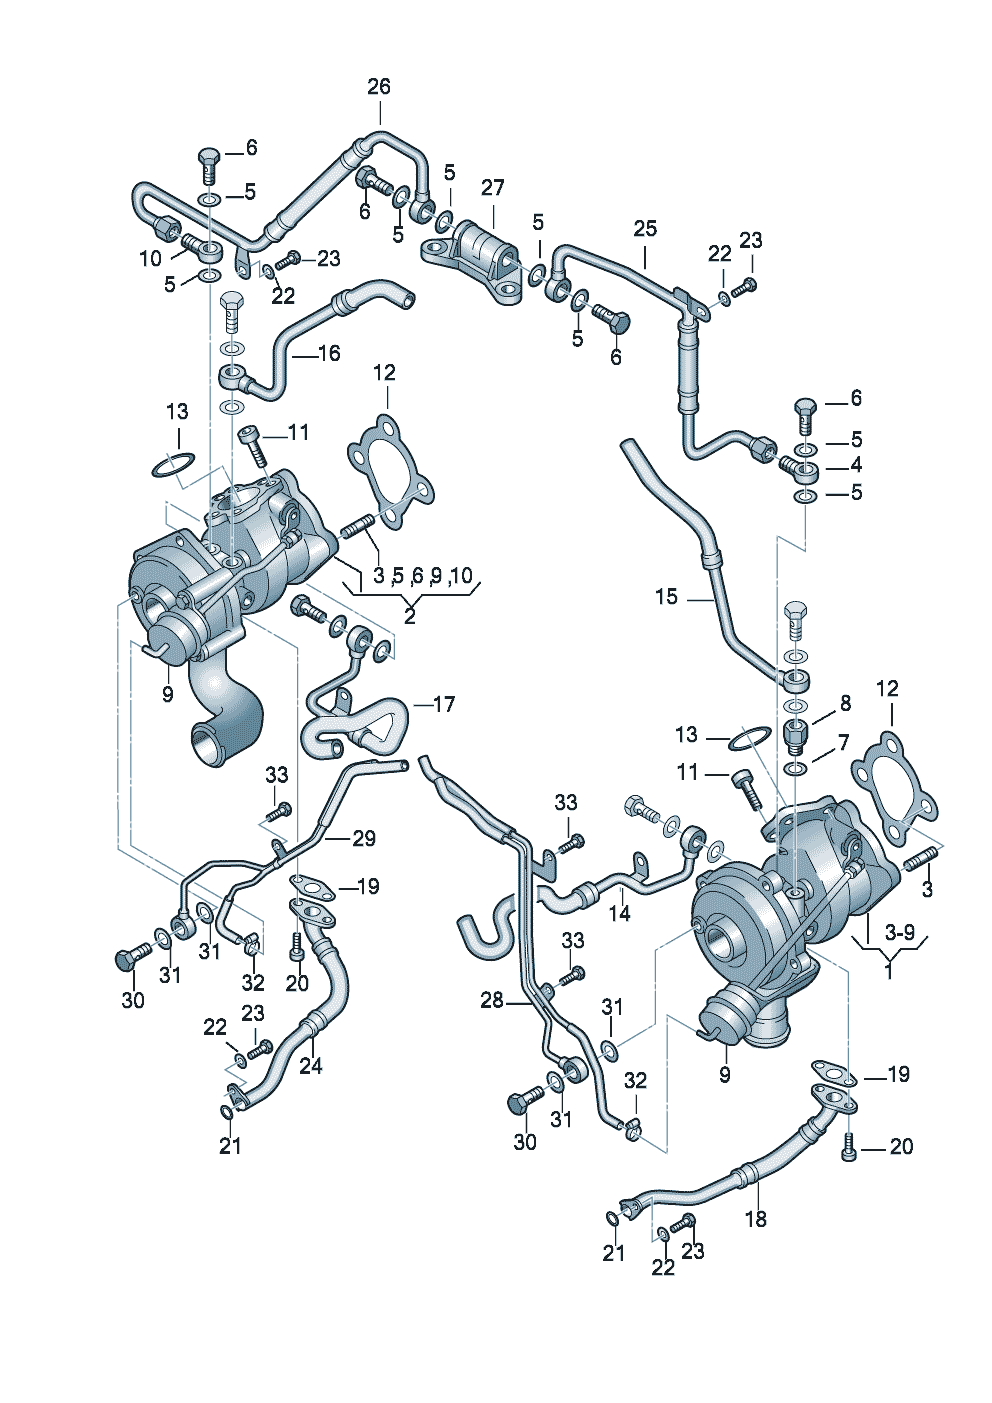 Exhaust gas turbocharger 2.7 Ltr. - Audi A4/S4/Avant - a4q